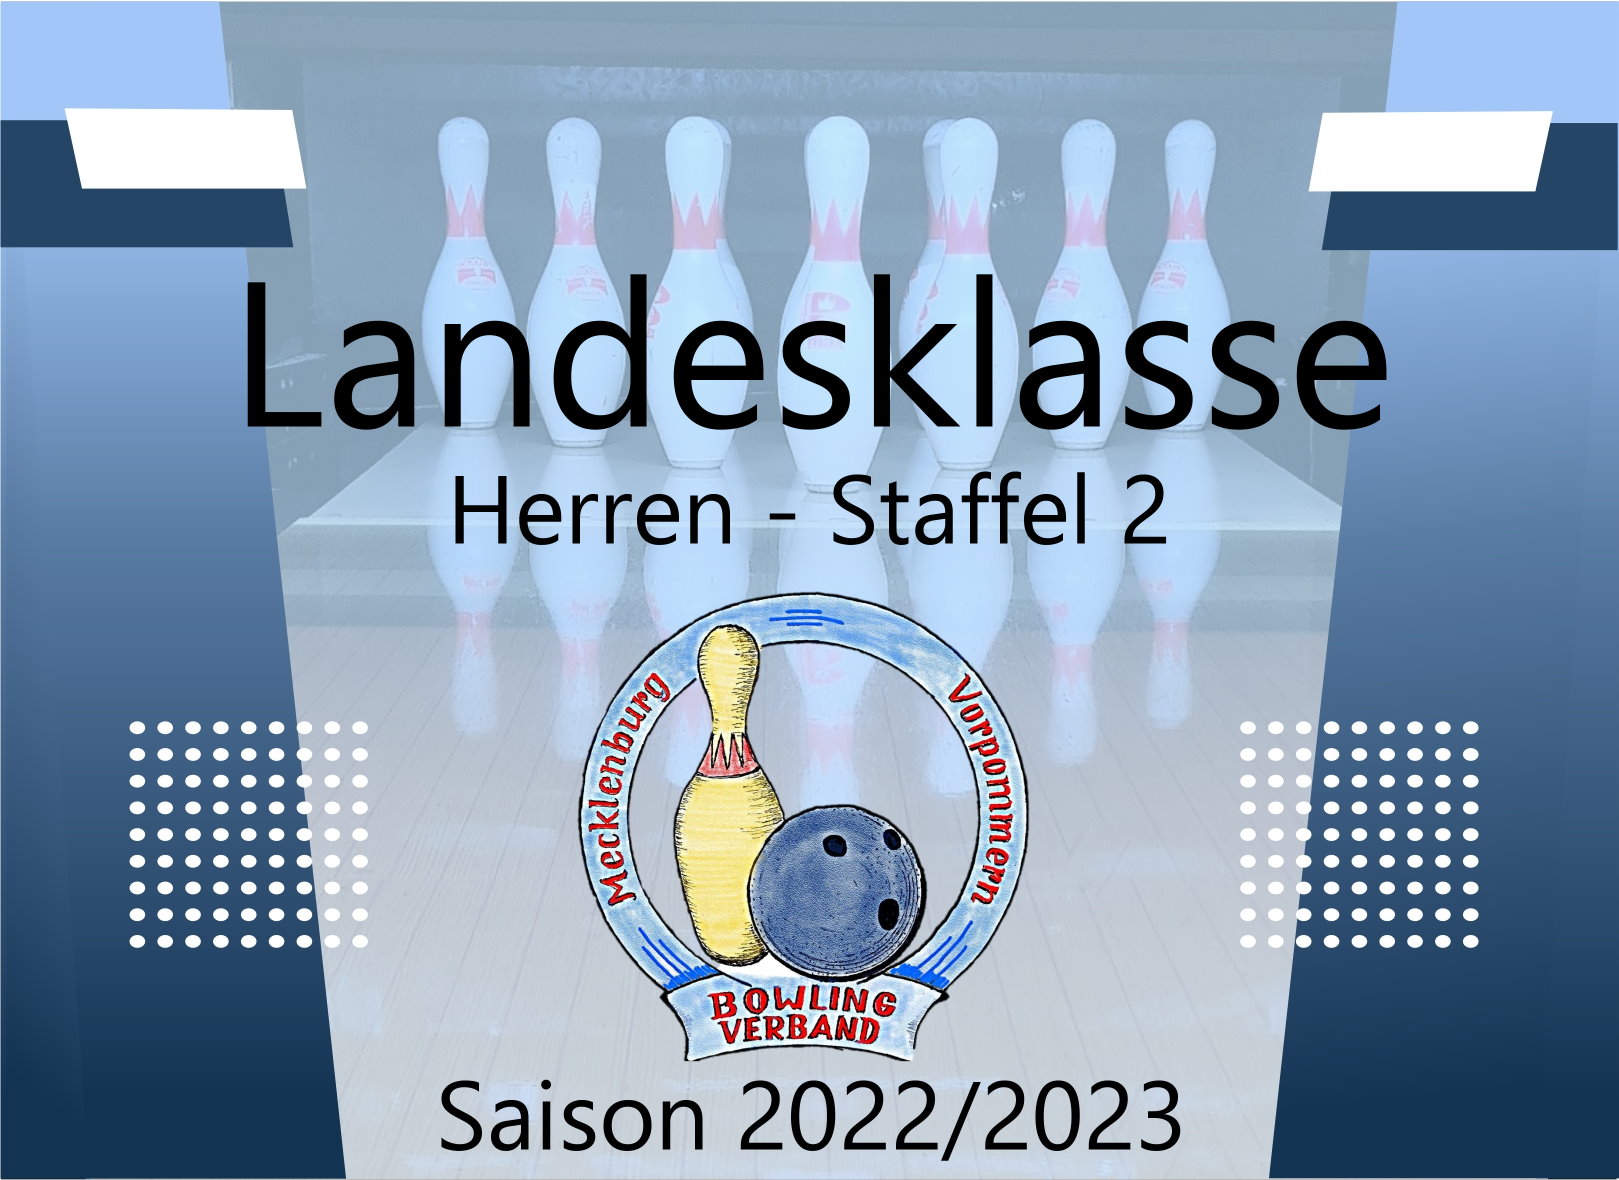 Landesklasse Herren Staffel 2 - 6. Spieltag